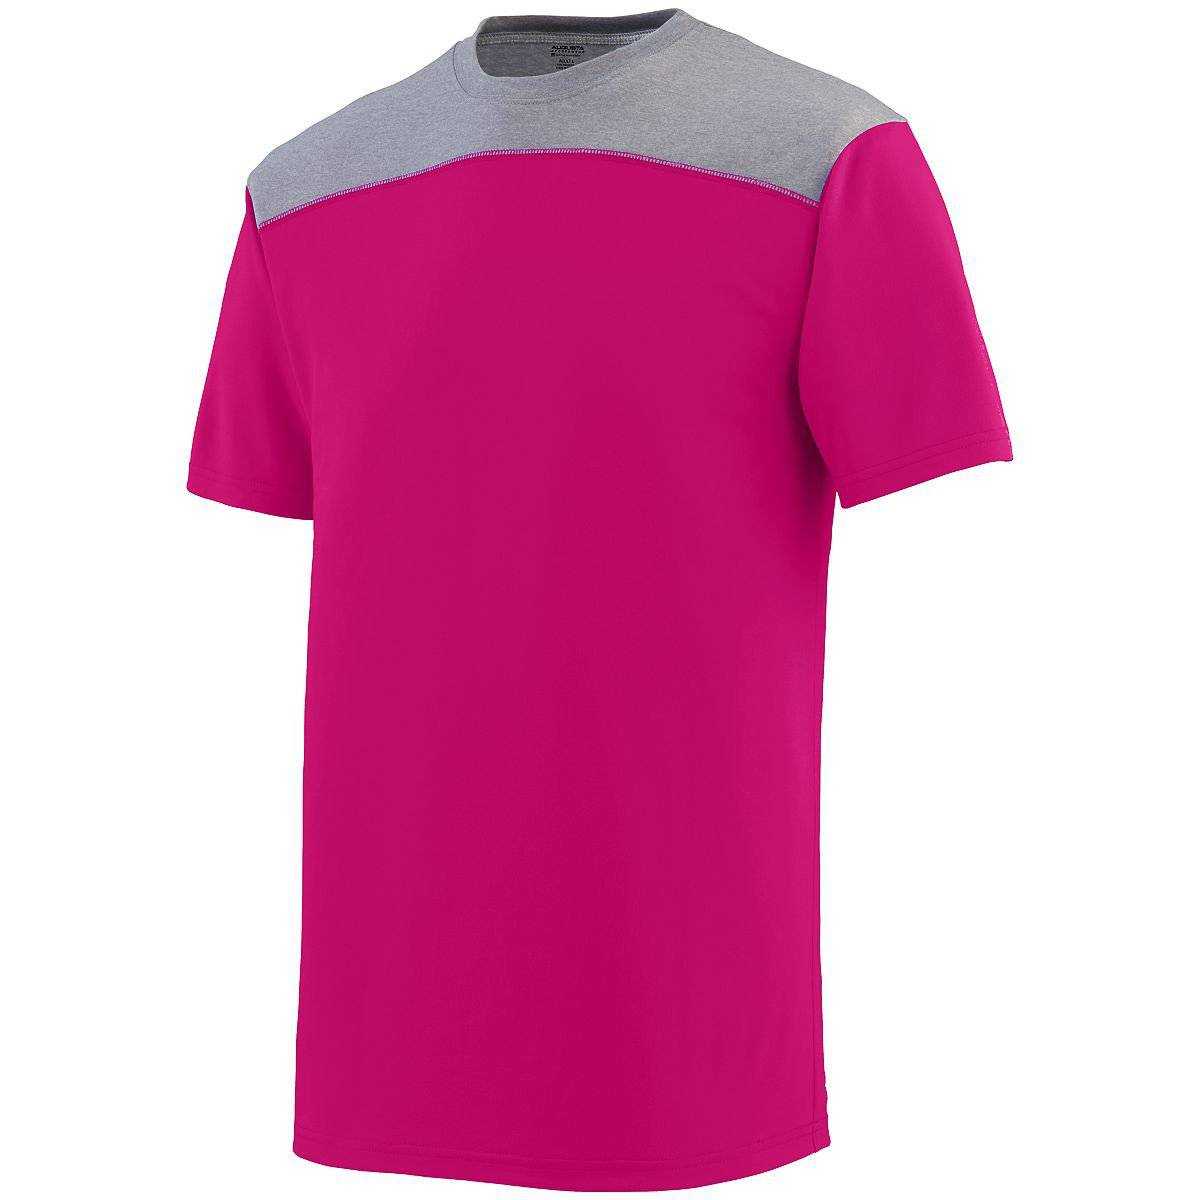 Augusta 3055 Challenge T-Shirt - Pink Dark Gray - HIT a Double